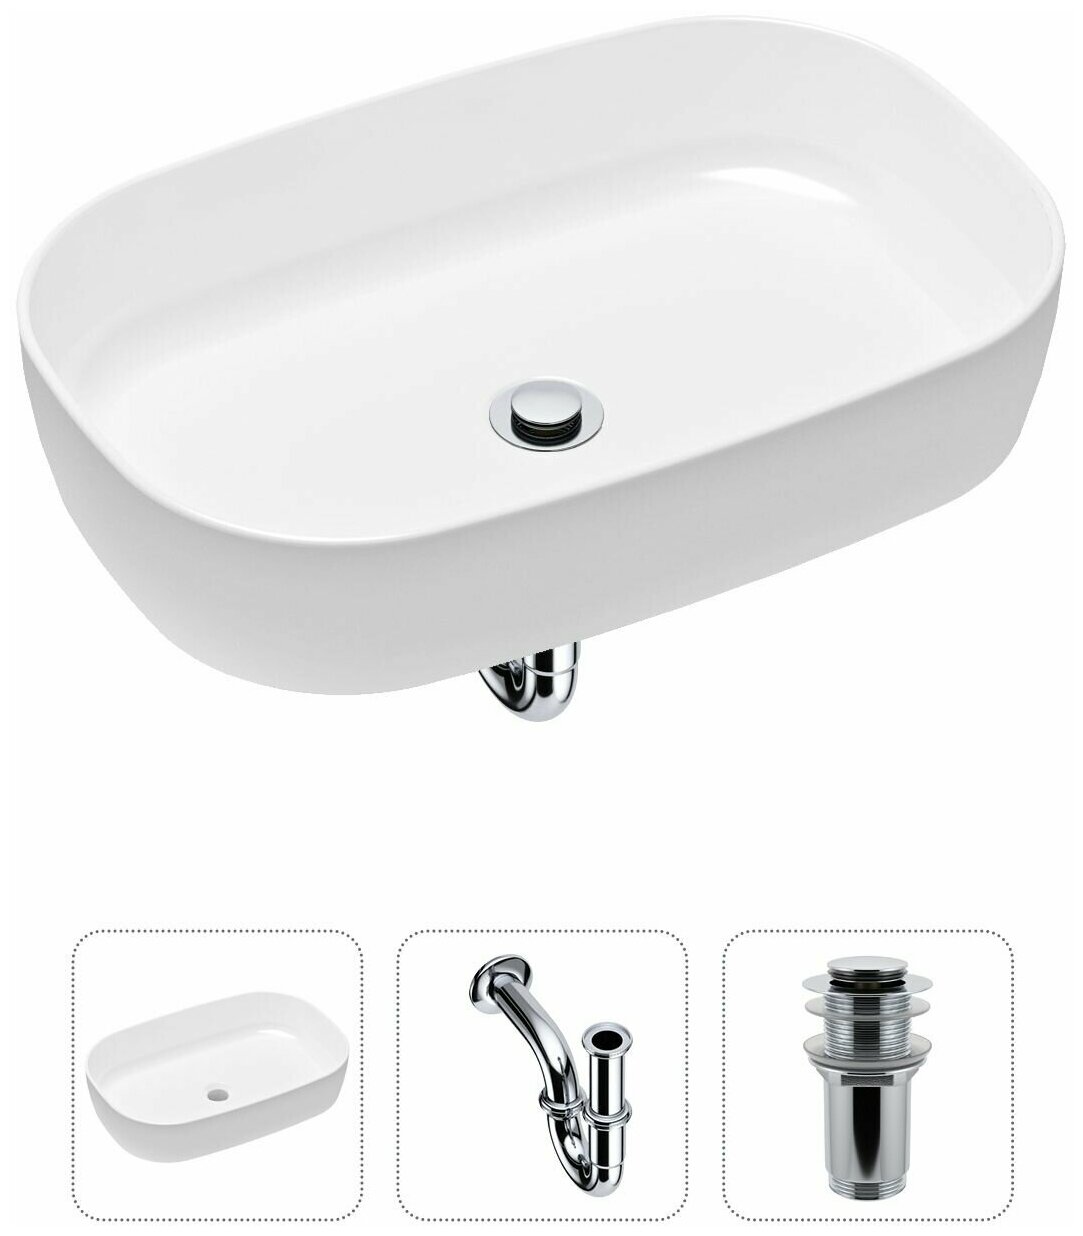 Комплект 3 в 1 Lavinia Boho Bathroom Sink 21520055: накладная фарфоровая раковина 54 см, металлический сифон, донный клапан - фотография № 1